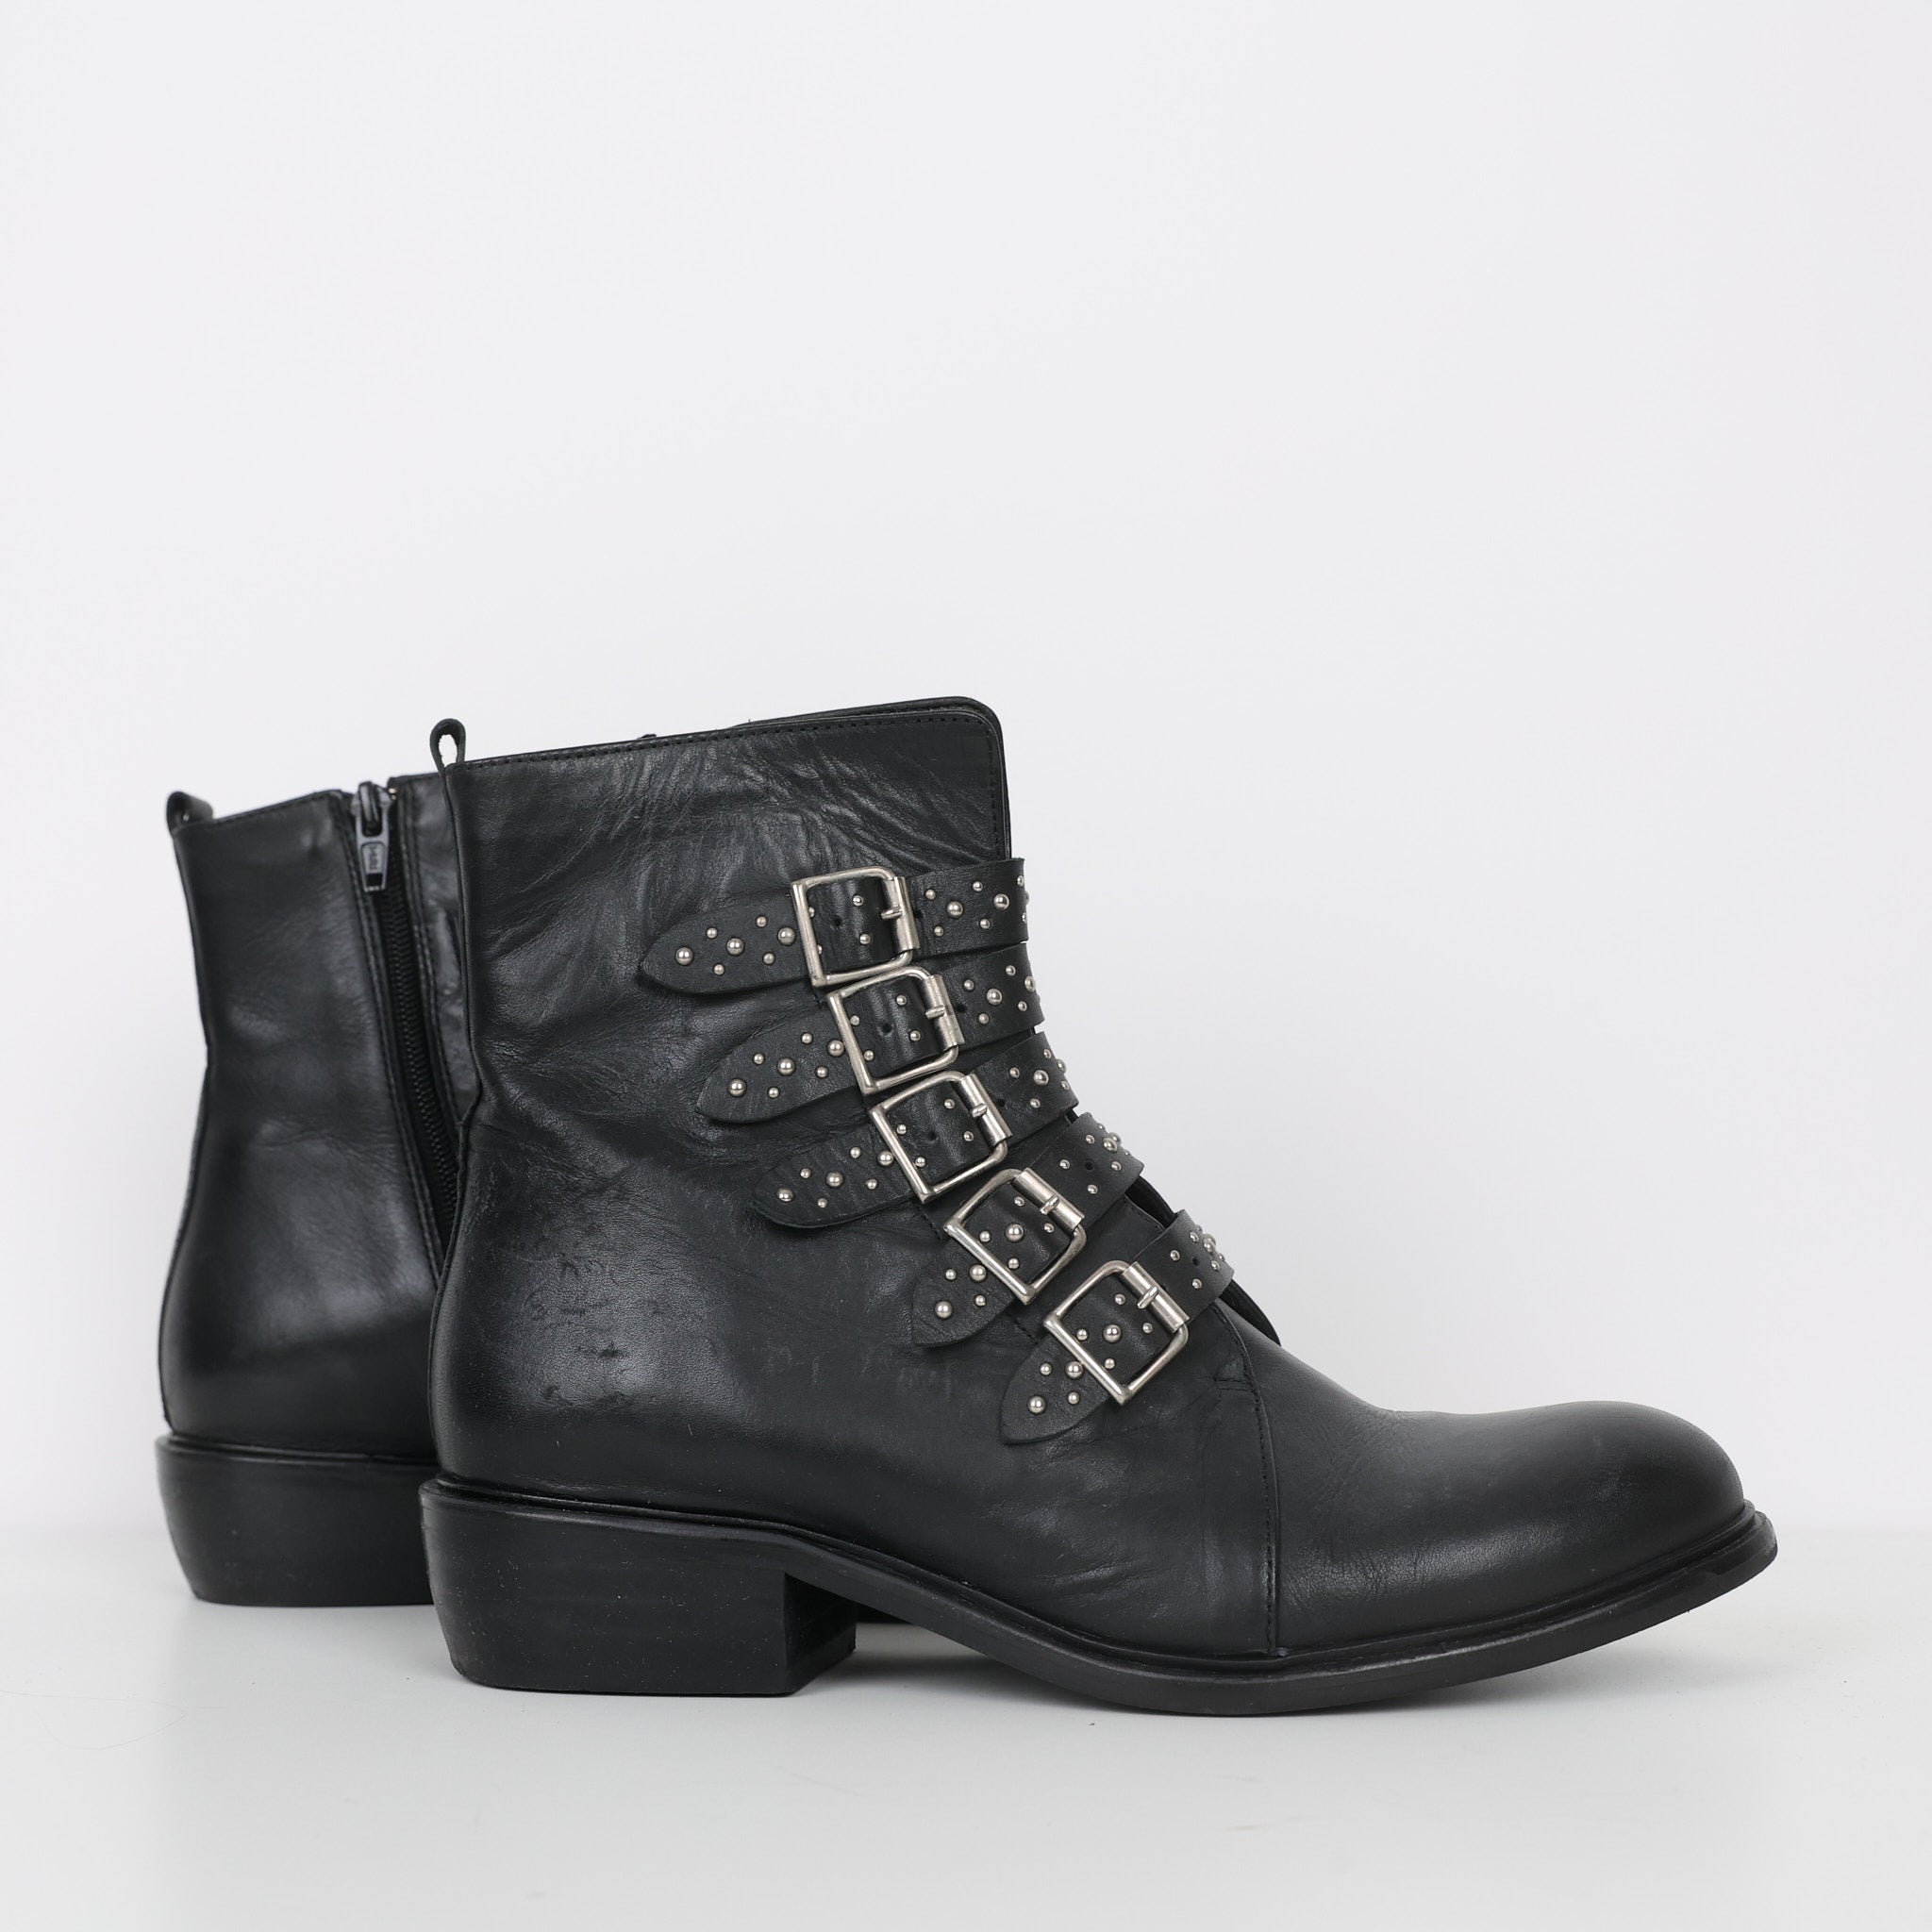 Boots, Shoe Size 38